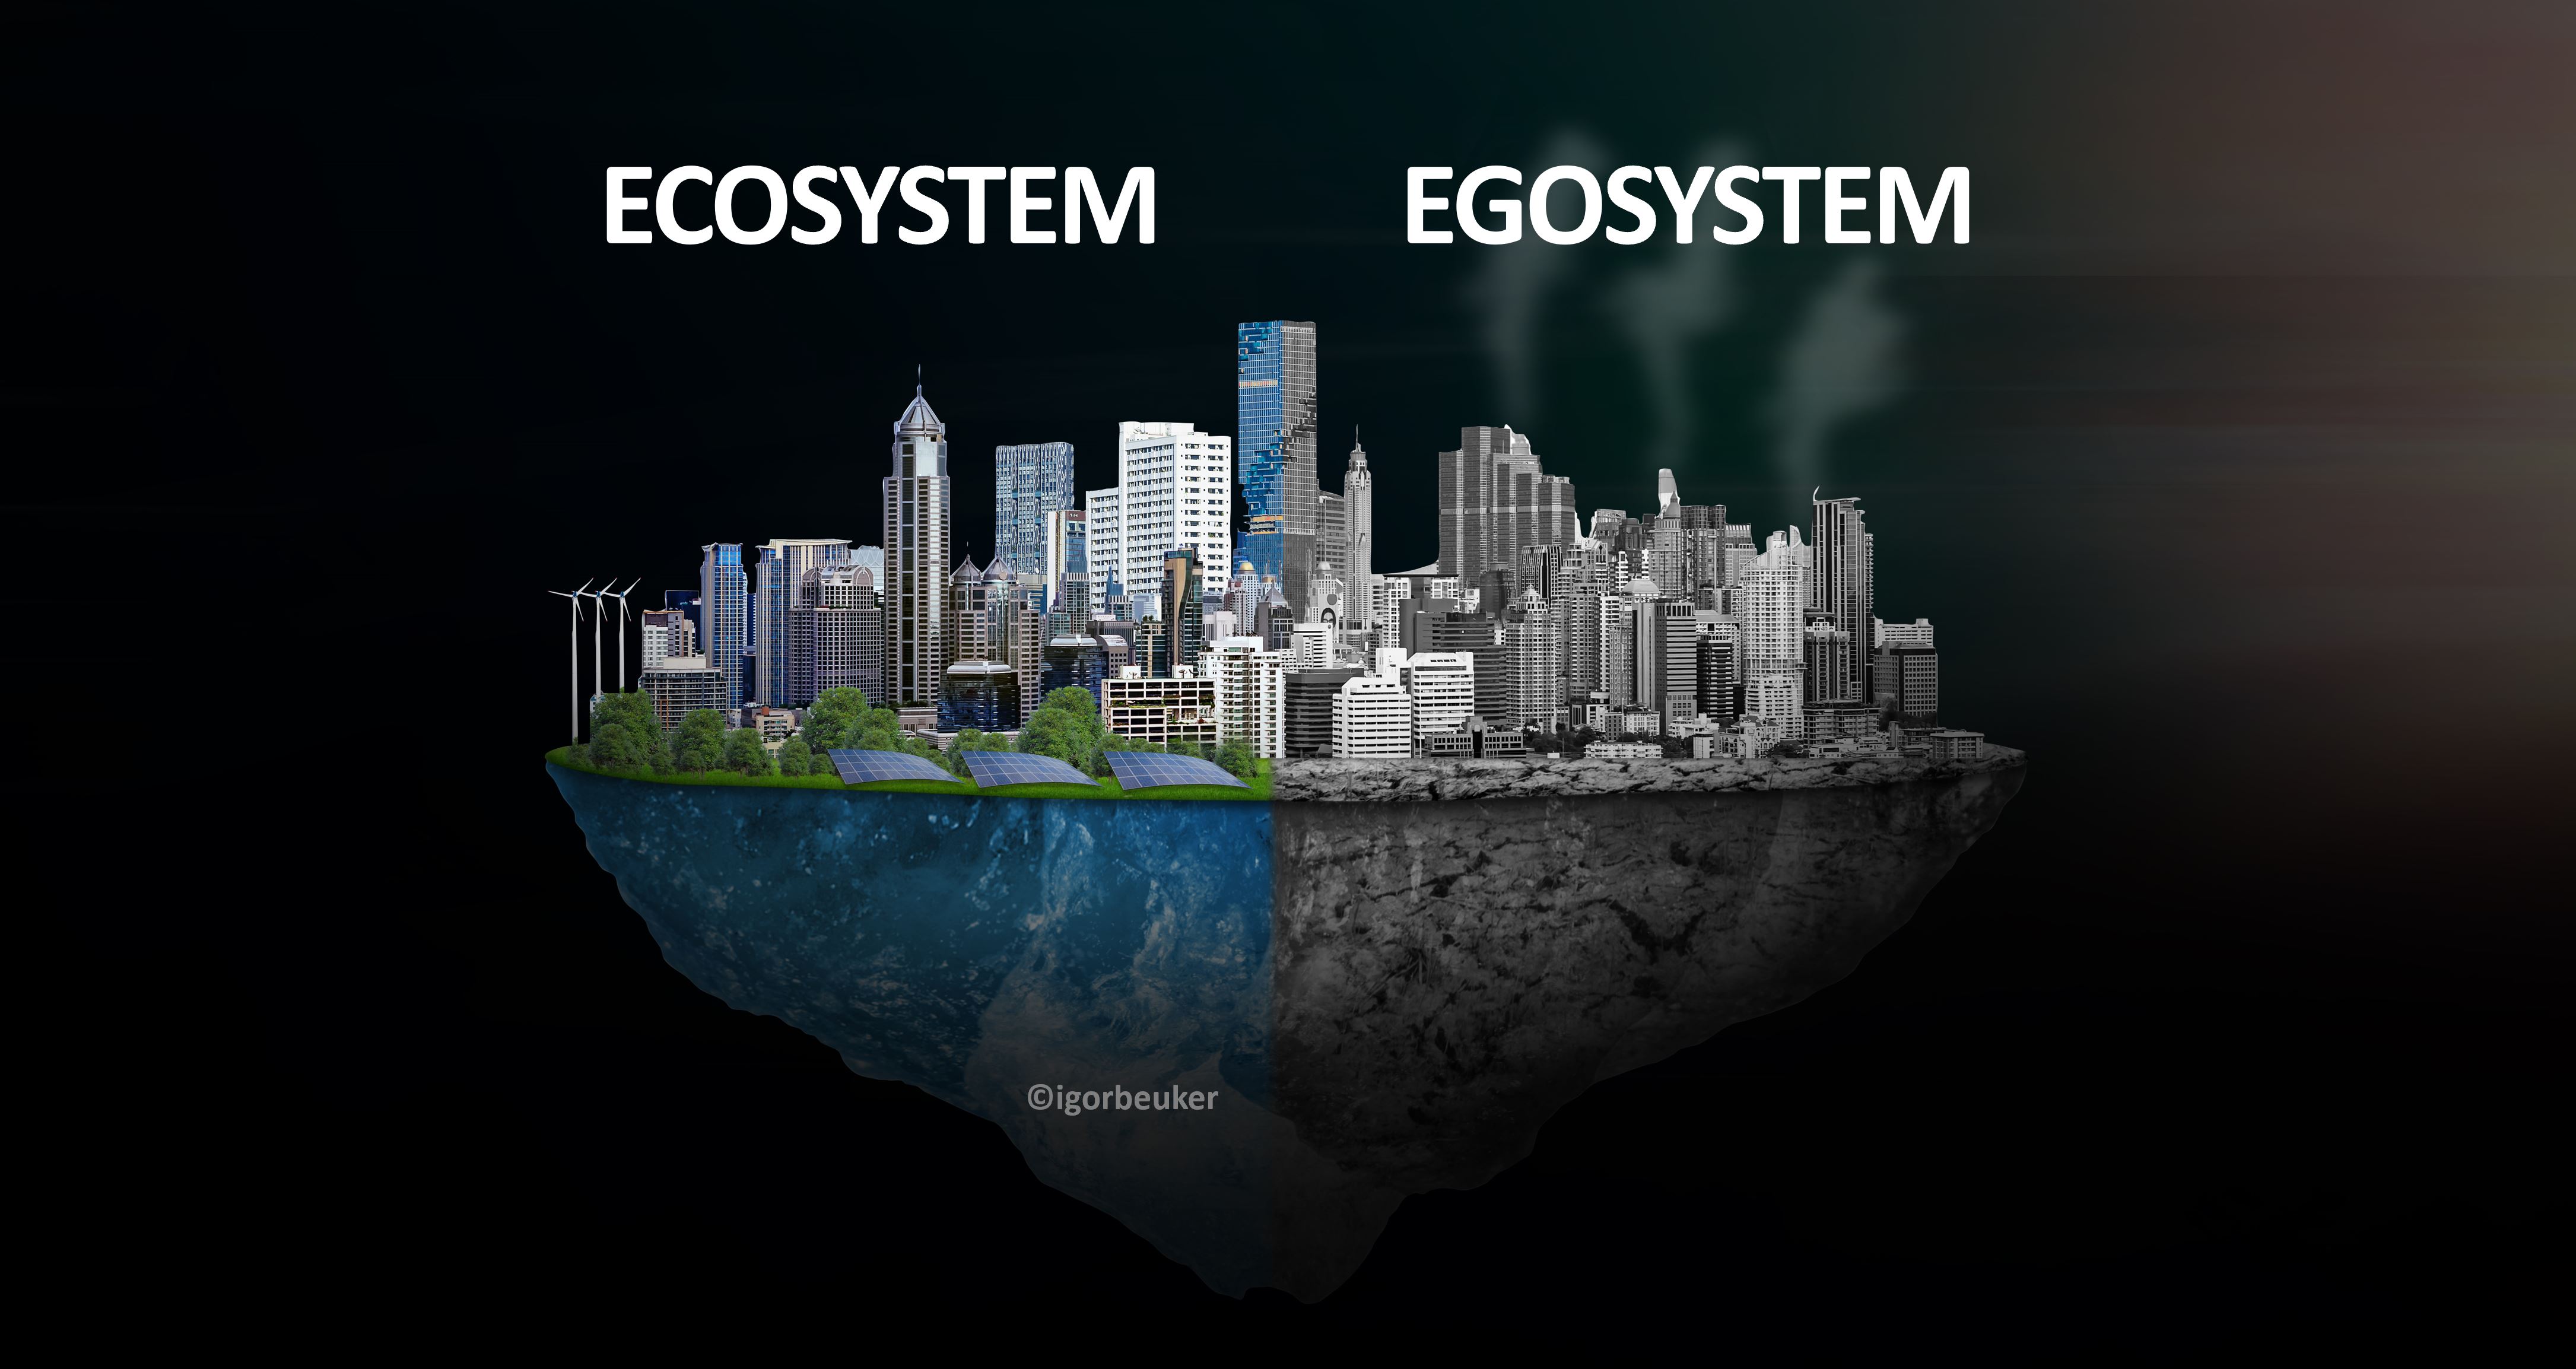 Circular_Planet_Ecosystem_vs_Ecosystem_KeynoteSpeaker_Igor_Beuker